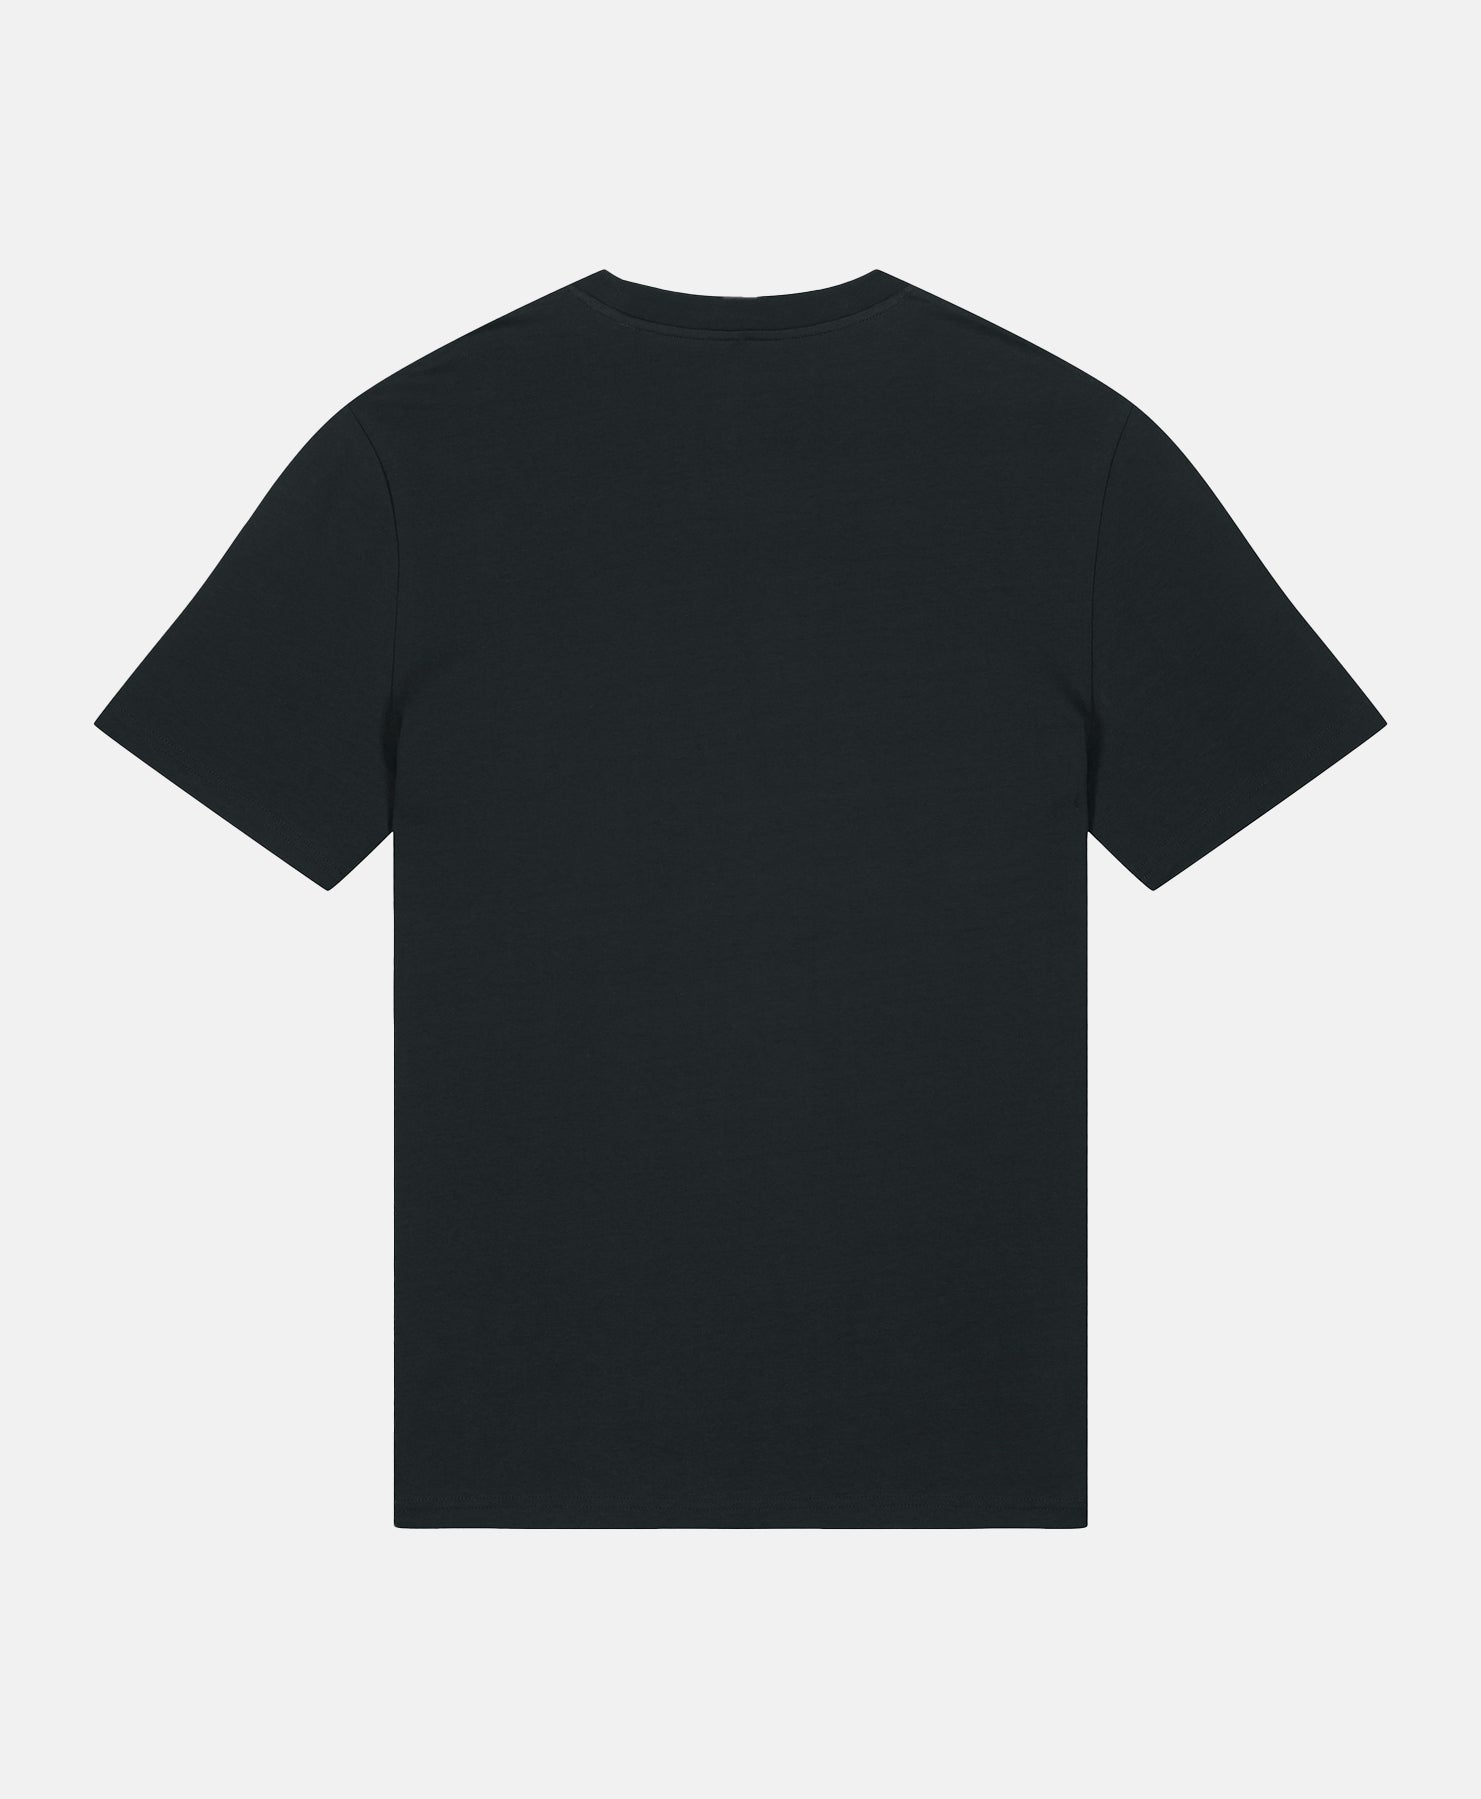 Golden Retriever T-Shirt Black